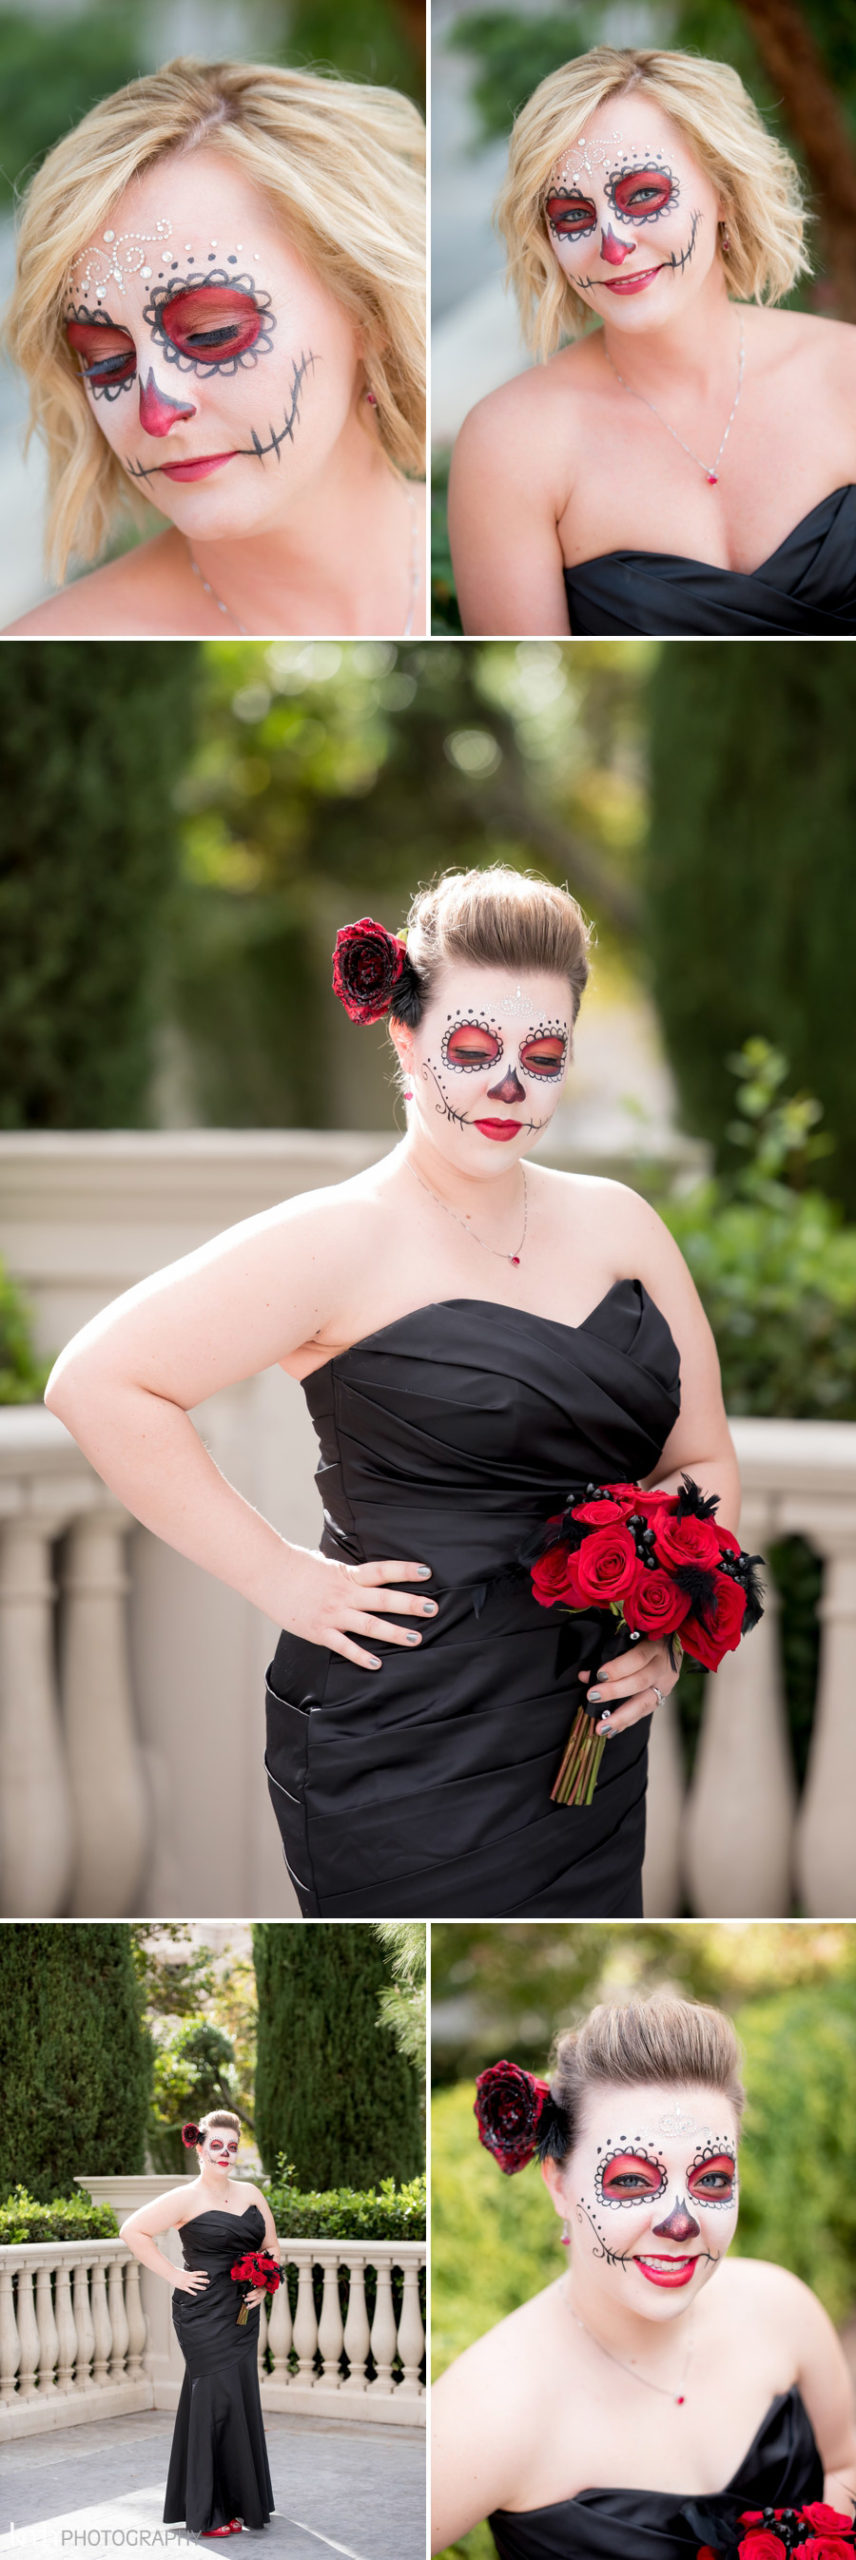 Dia De Los Muertos - Day of the Dead Sugar Skull Wedding | KMH Photography